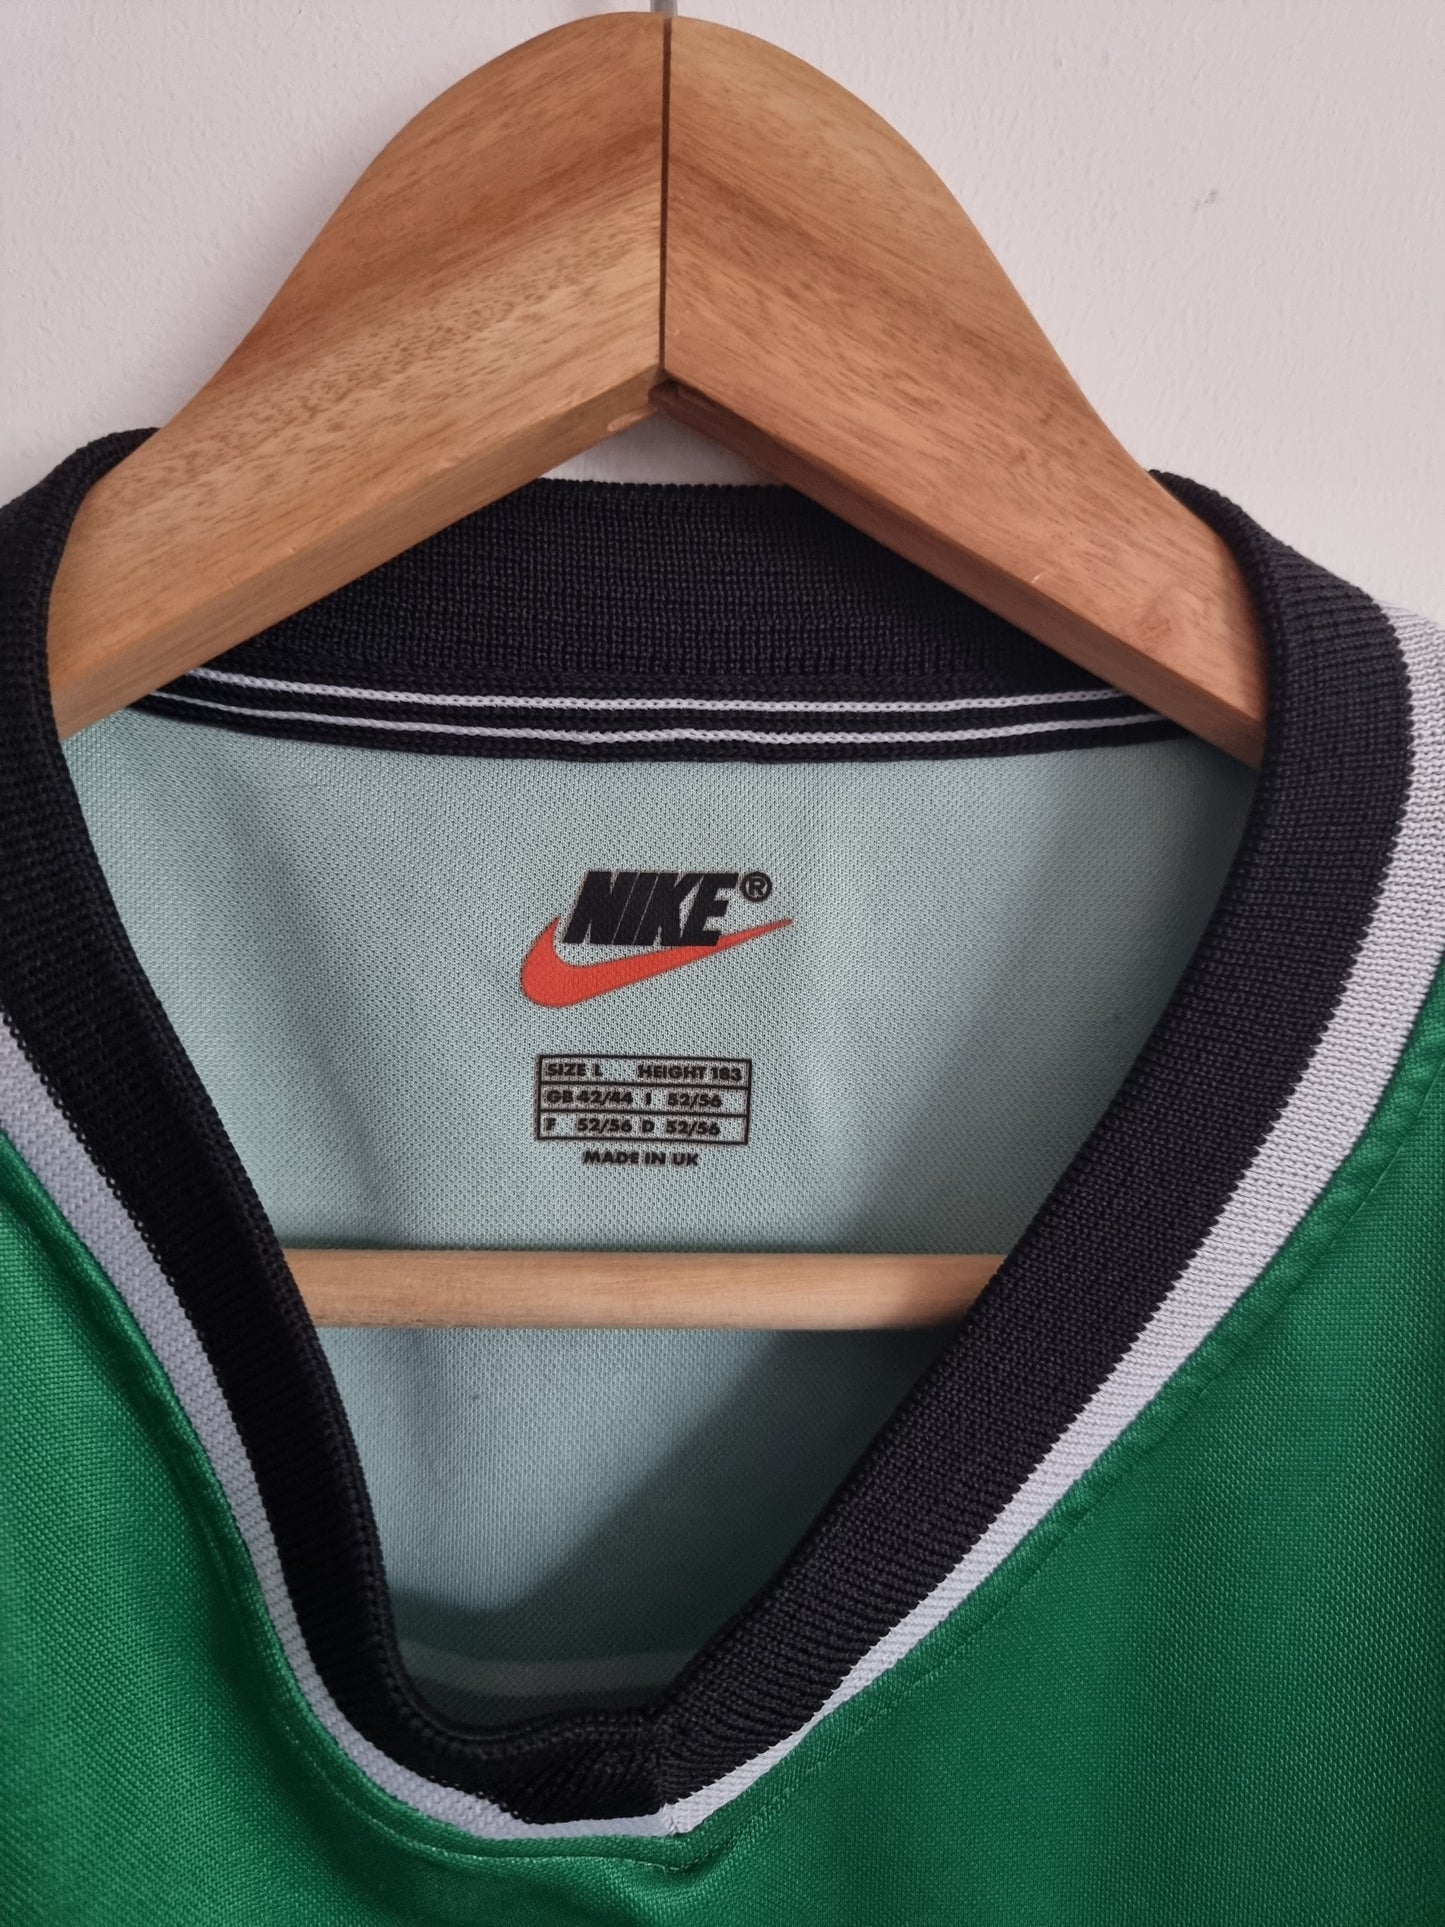 Nike Tirol Innsbruck 99/00 Home Shirt Large